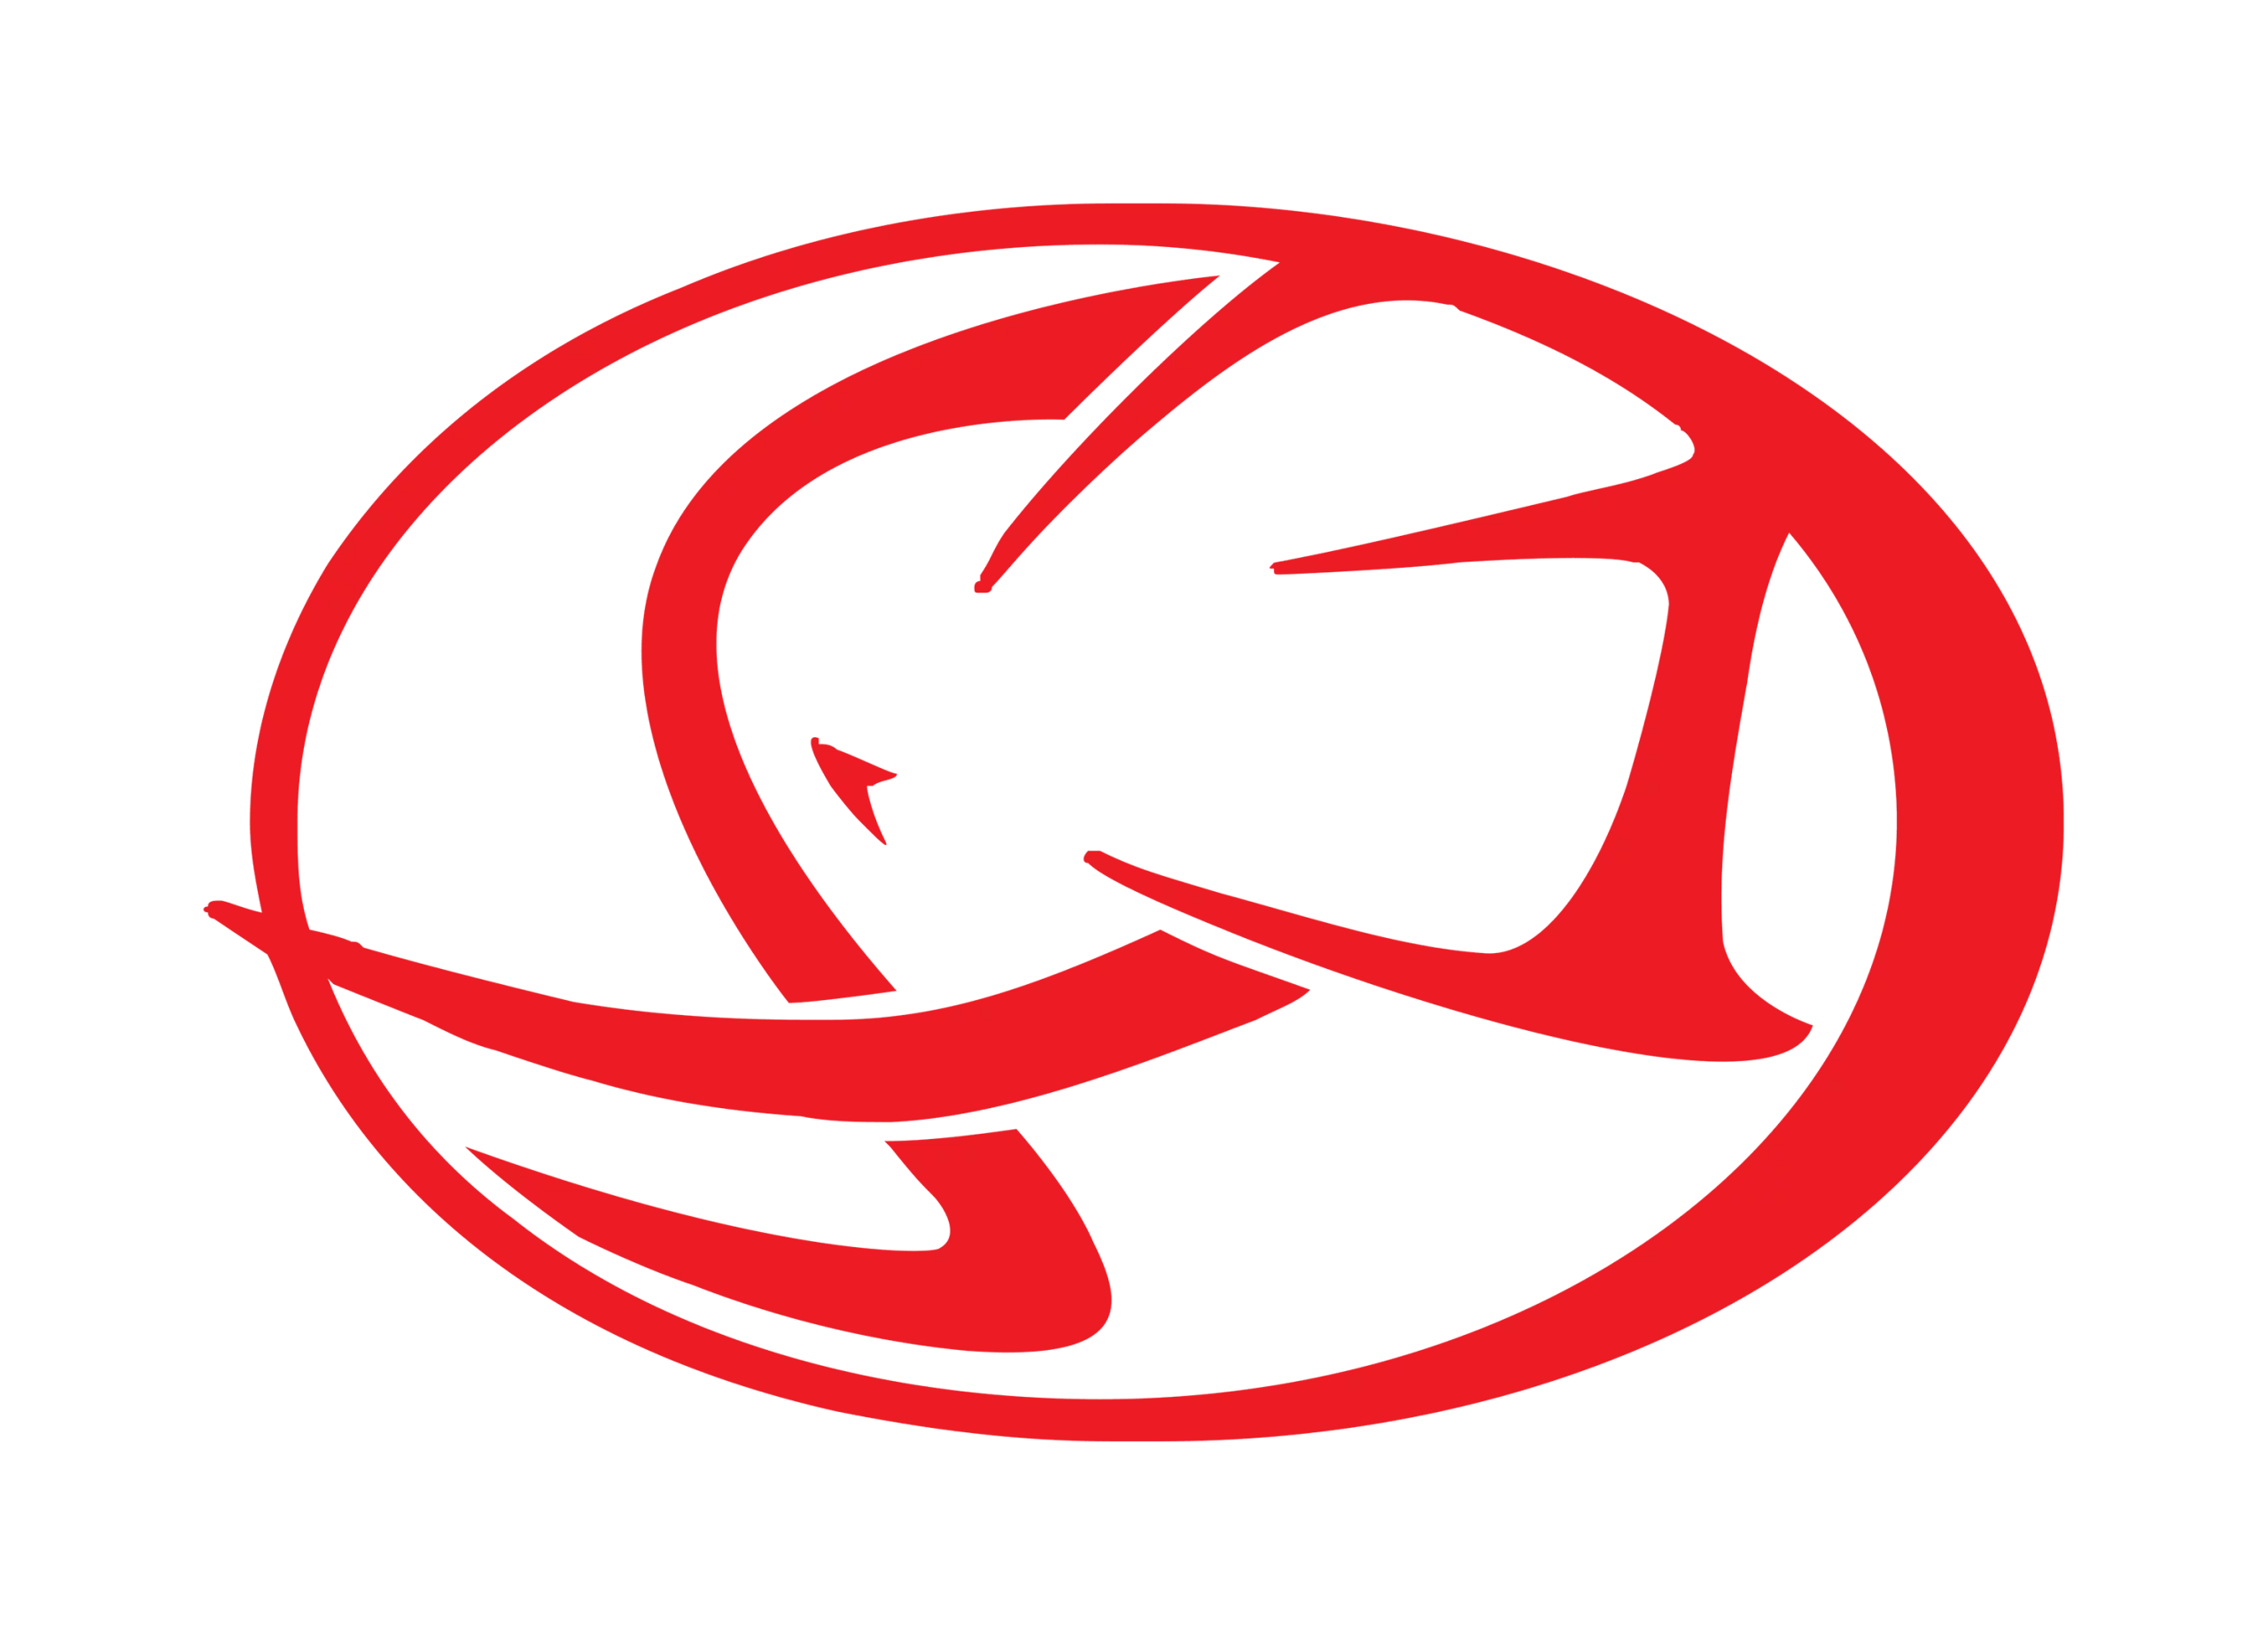 Cagiva logo 2000-present